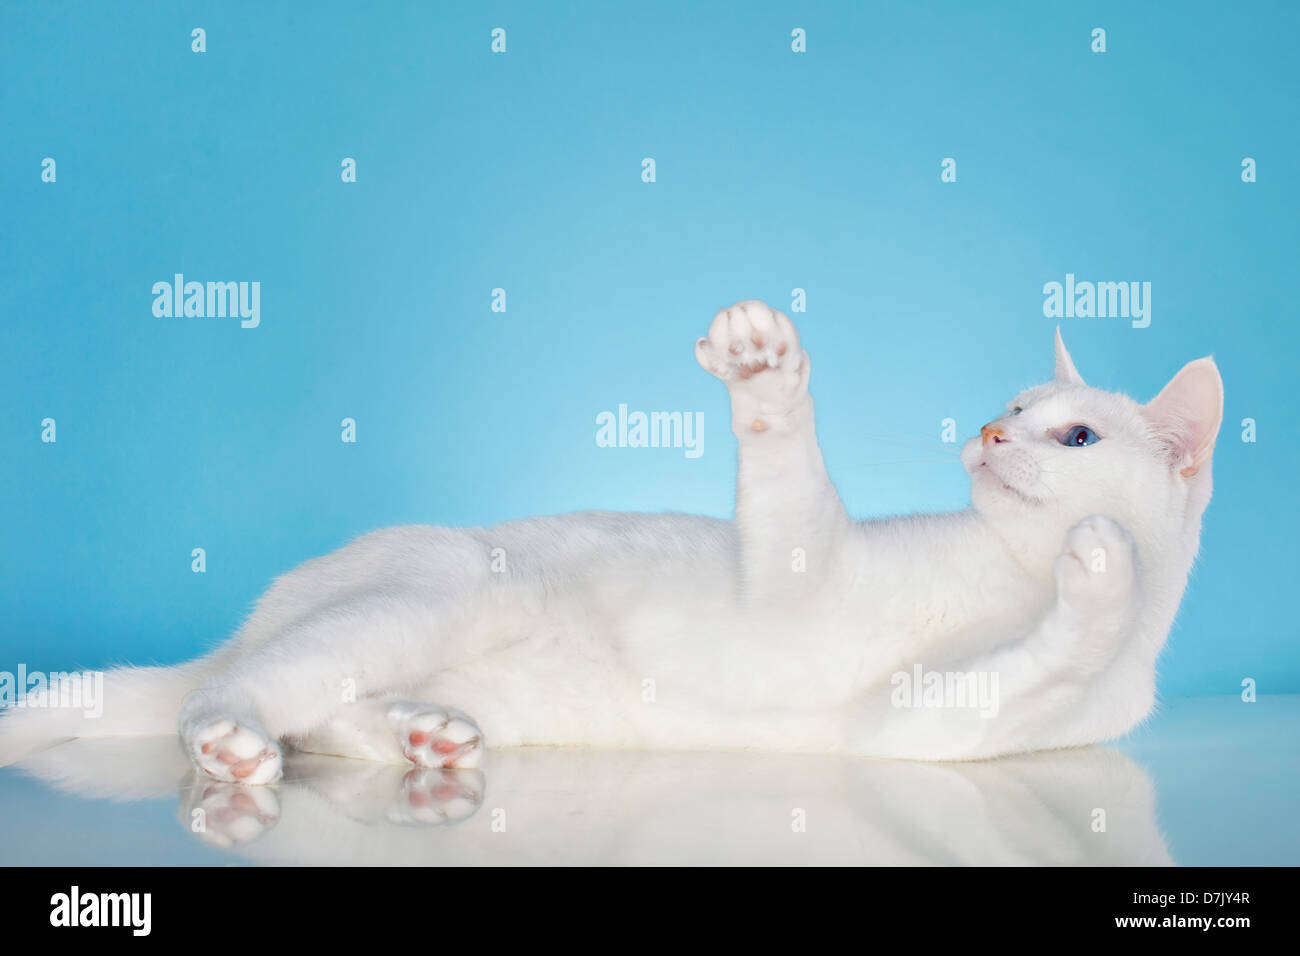 Reine weiße Katze mit blauen Augen in Spiellaune vor blauem Hintergrund Stockfoto